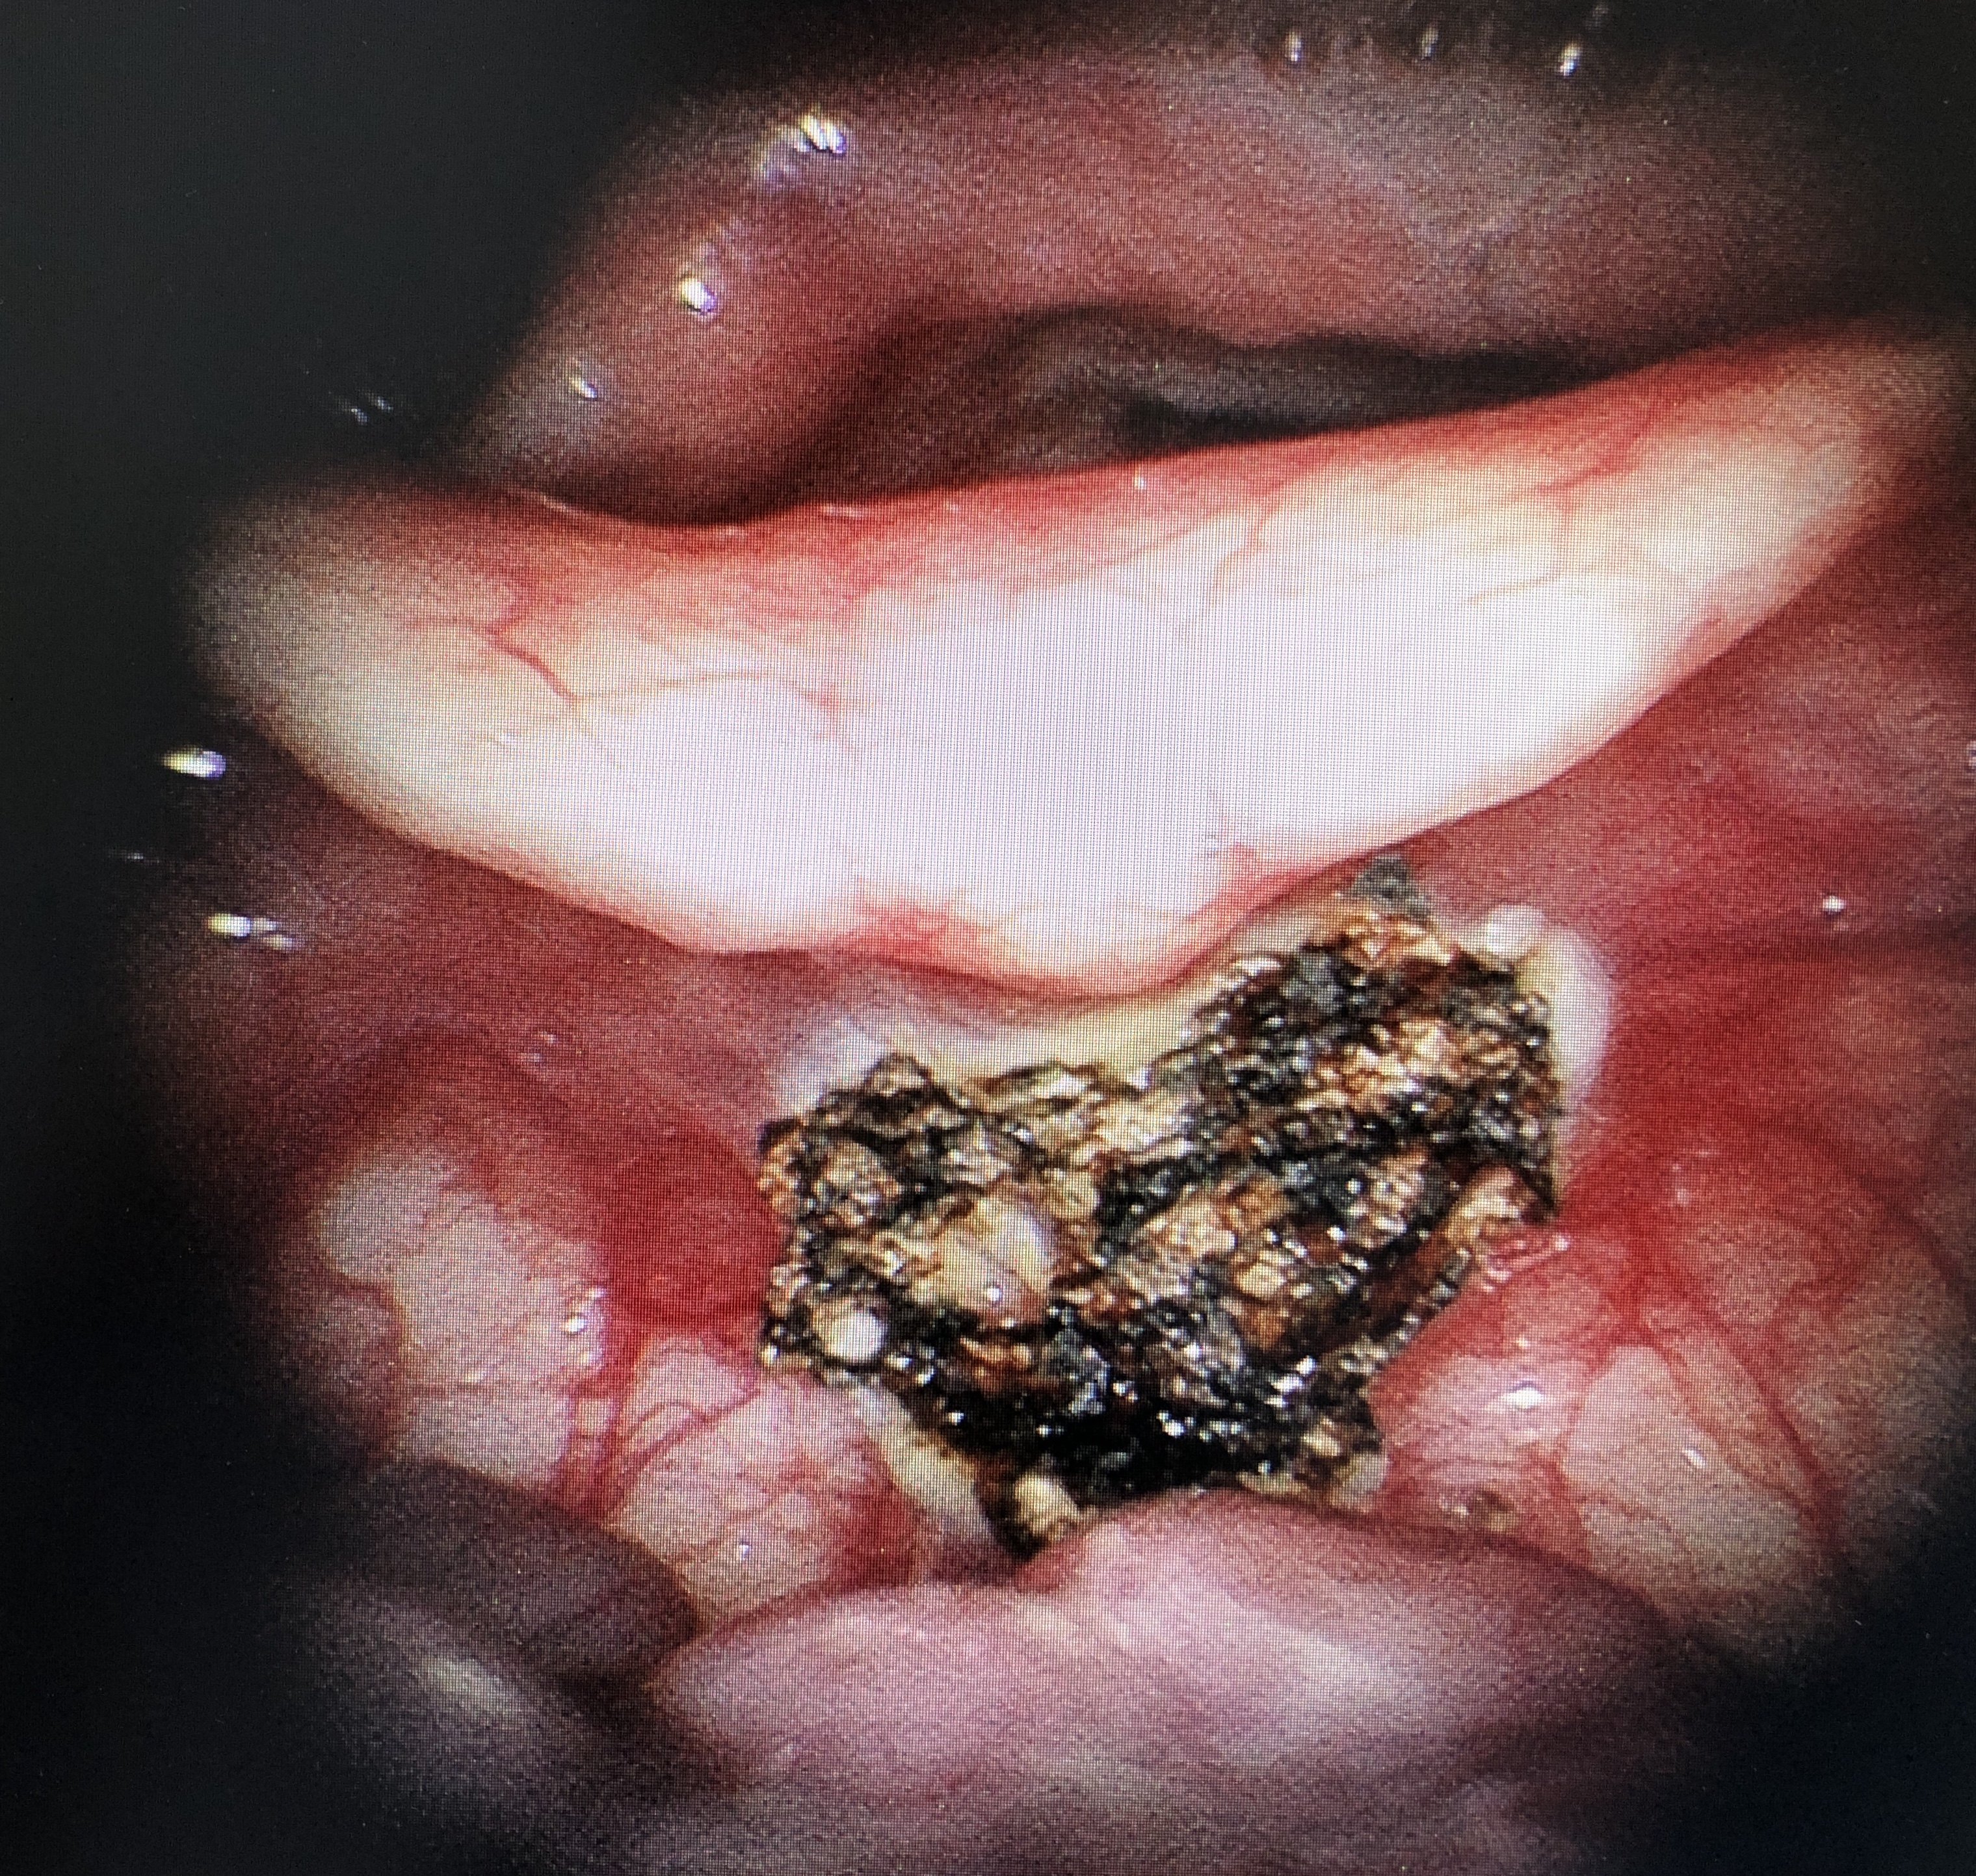 电子喉镜下可以看到会厌舌面中份及偏左两处大小不等囊肿样物